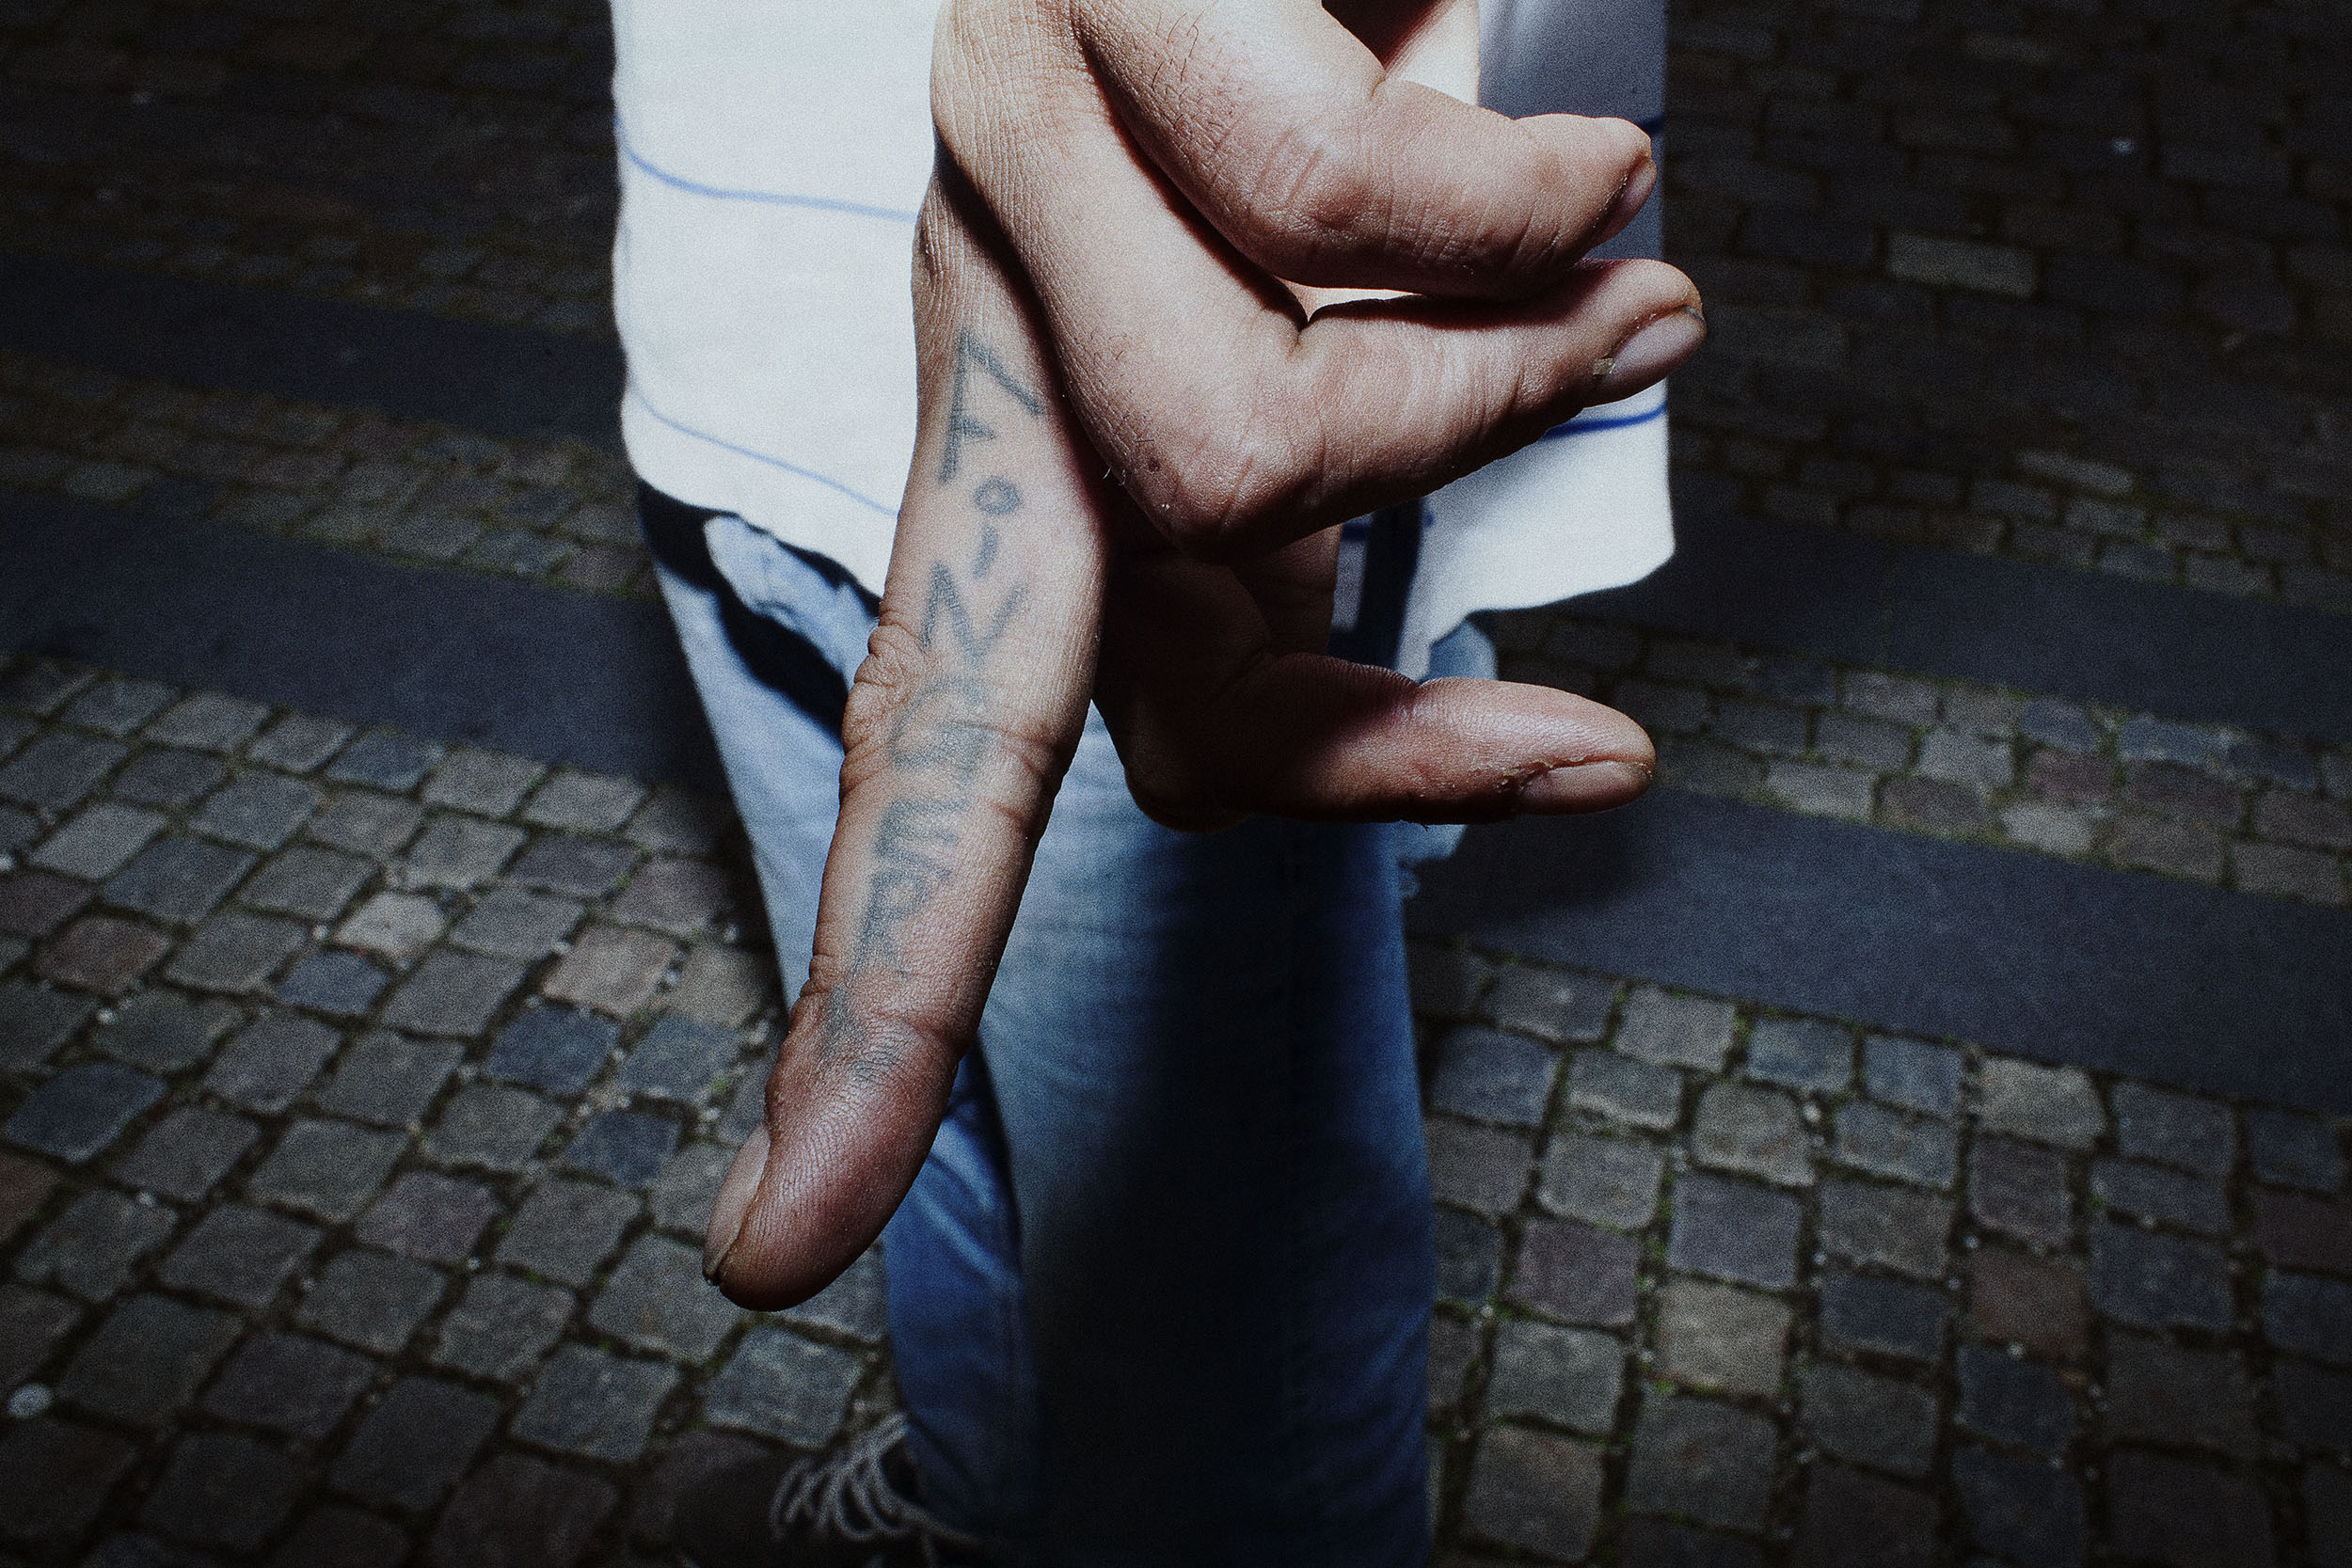 Paulo Kongsbirk viser sin første tatovering frem. “Finger”, står der på indersiden af hans langefinger. Han fik den som 27 årig, siden er der kommet flere tatoveringer til.